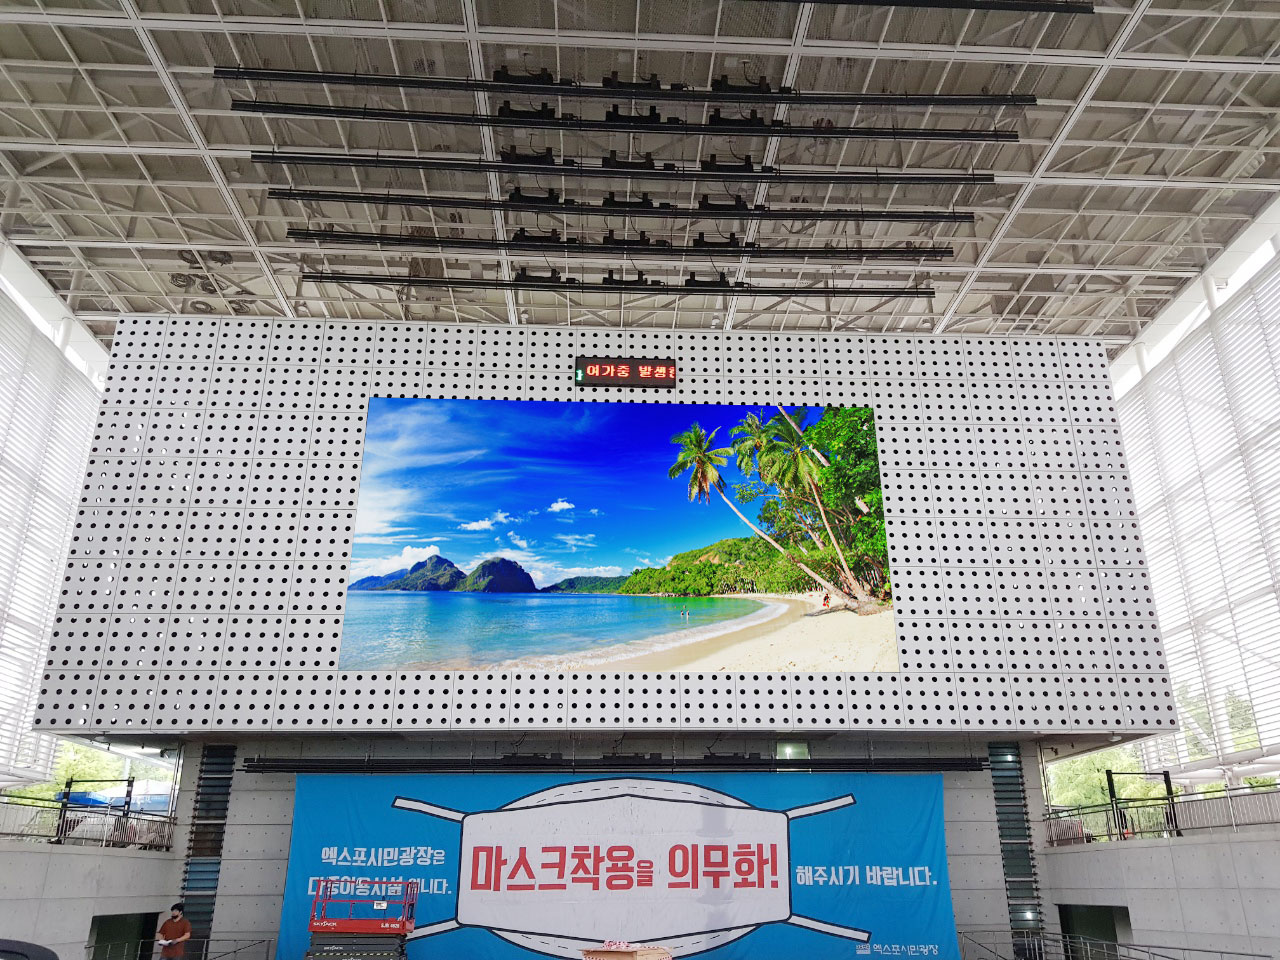 Indoor led screenn,indoor led video wall, indoor led display screen,